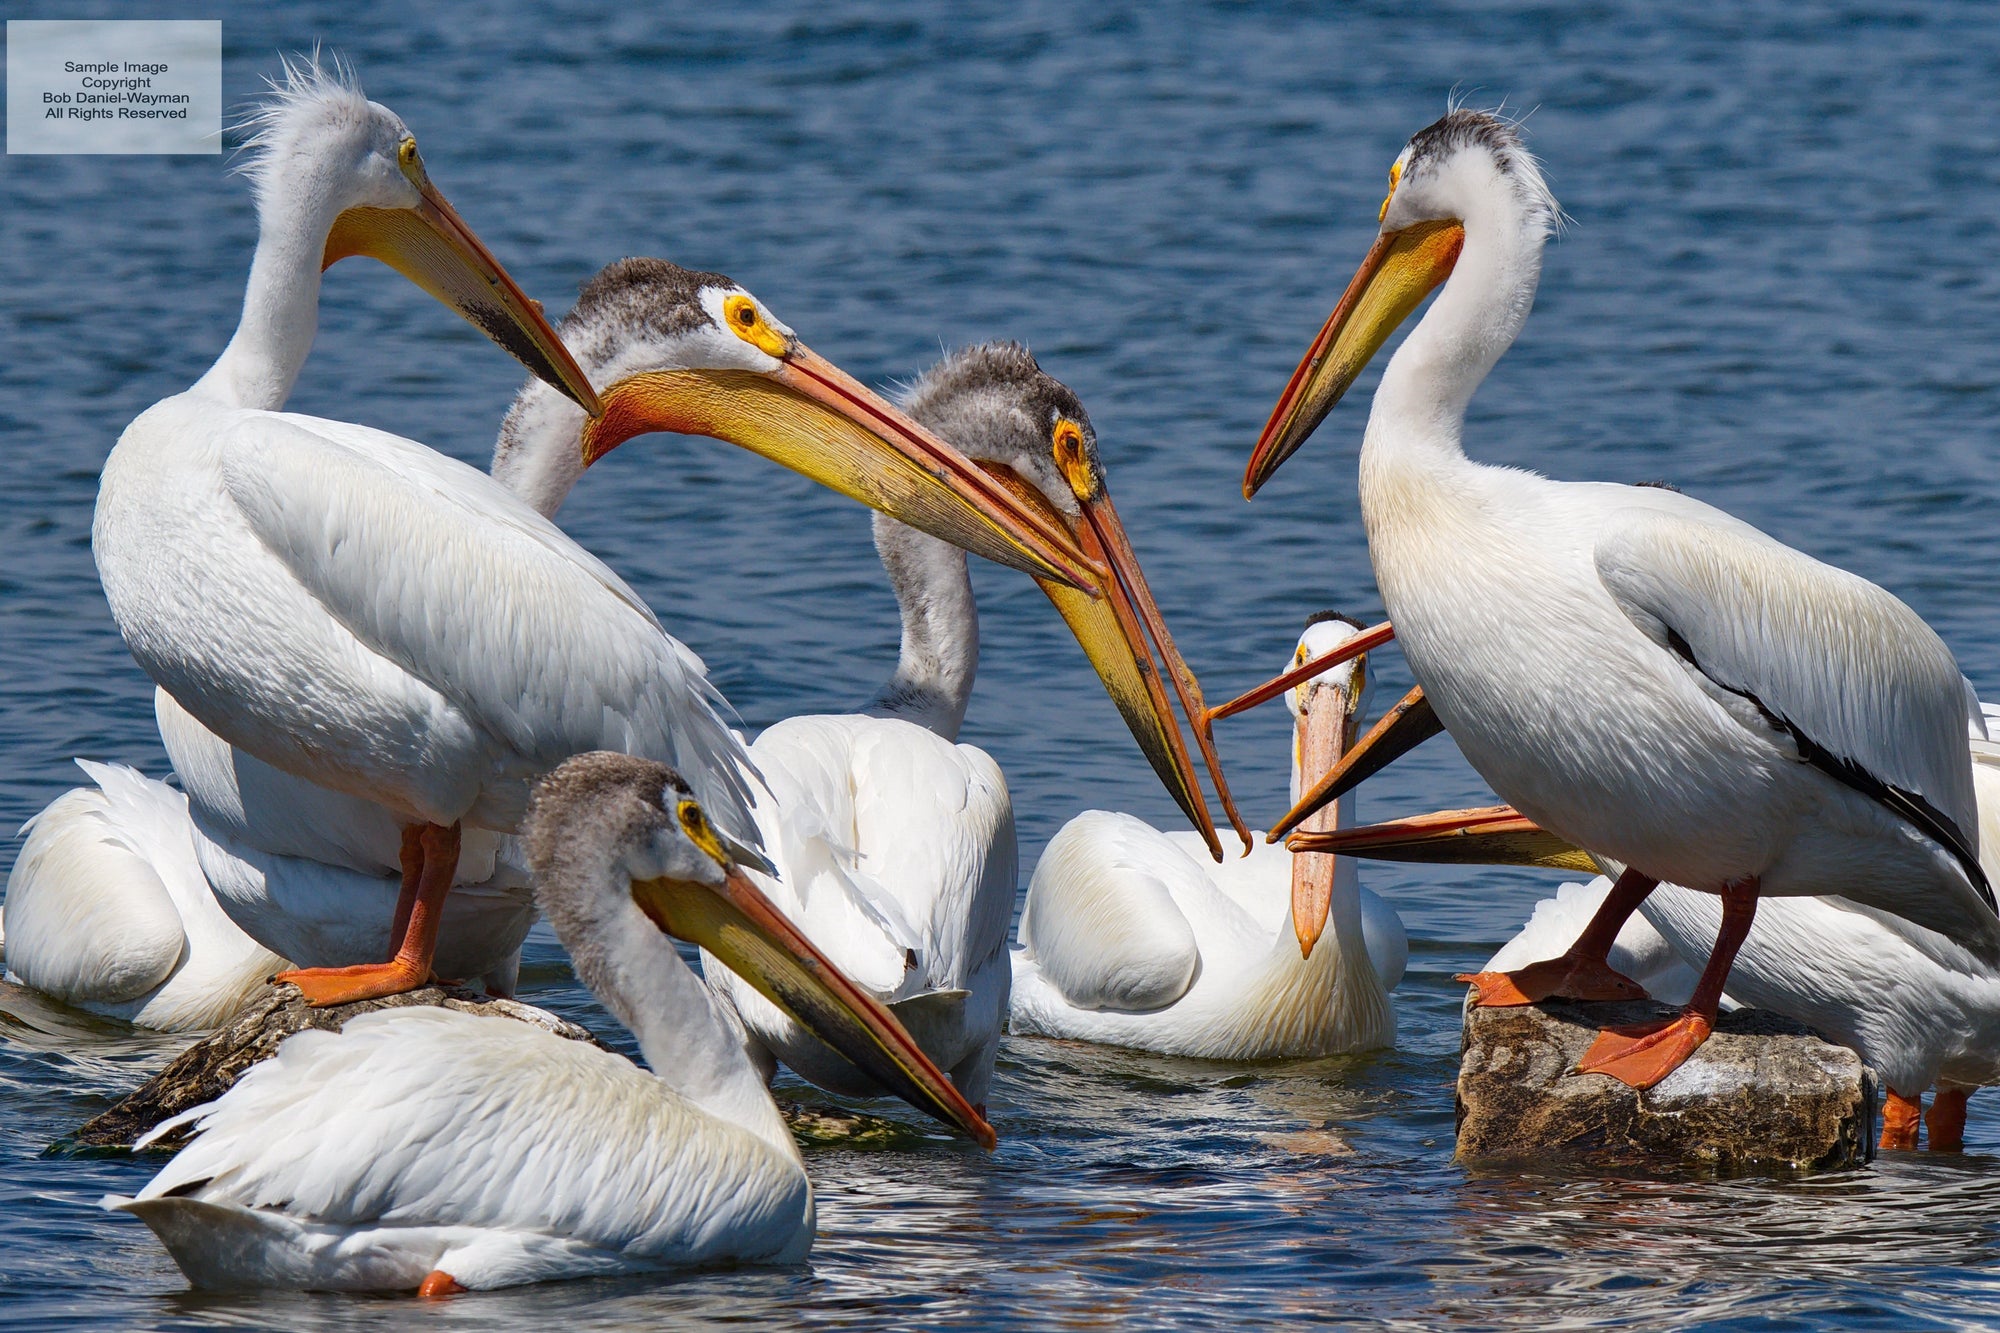 American Pelicans In Conversation